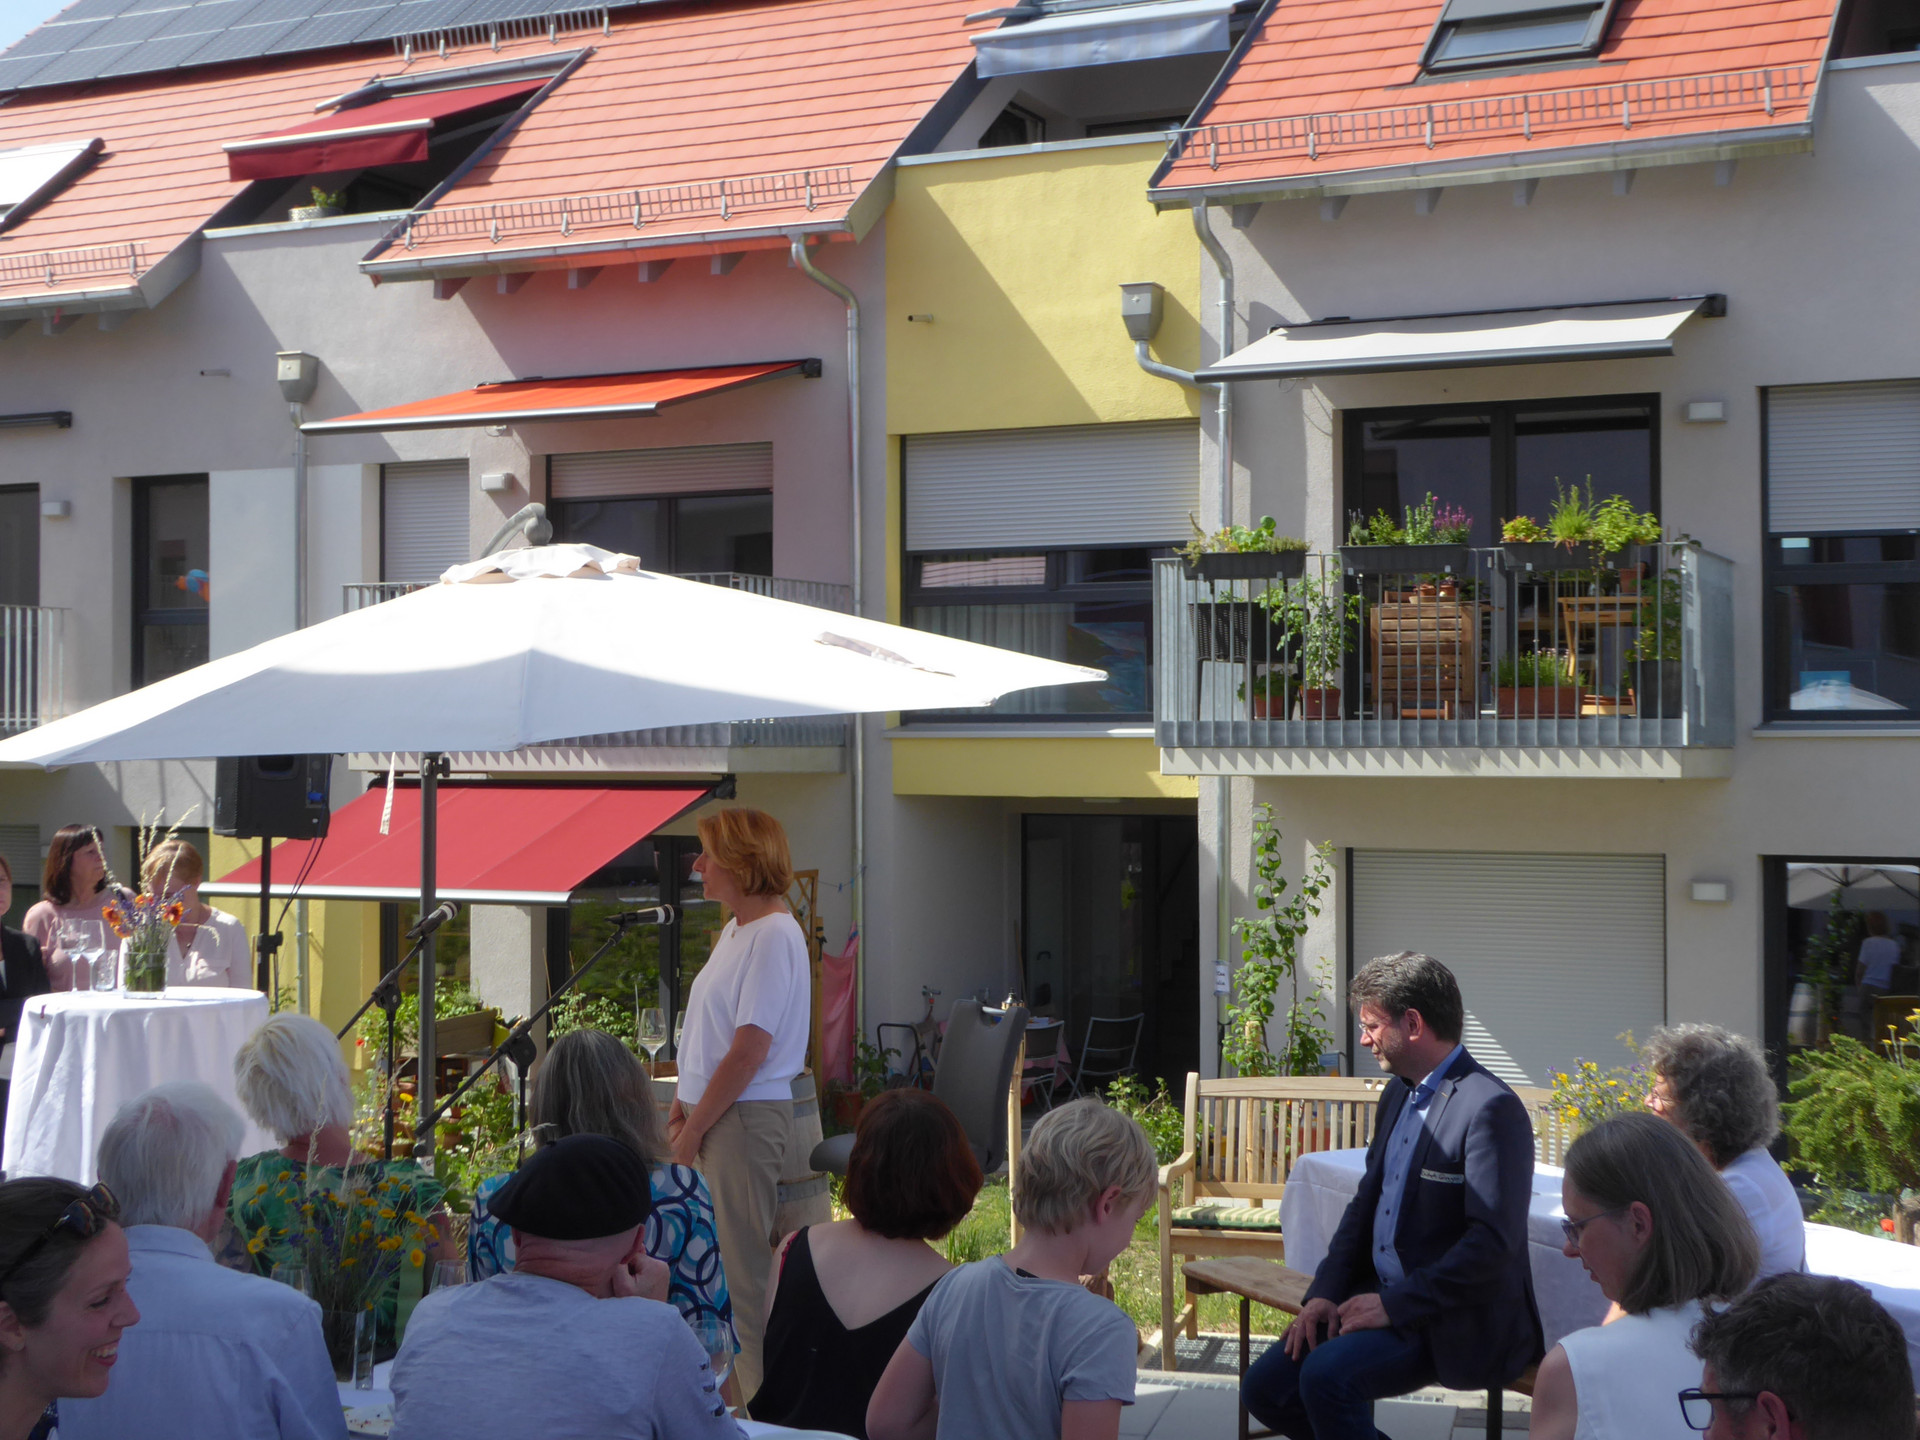 Ministerpräsidentin Malu Dreyer bei der Rede unter einem Sonnenschirm, davor sitzend Zuhörer vor dem Hintergrund eines Wohngebäude